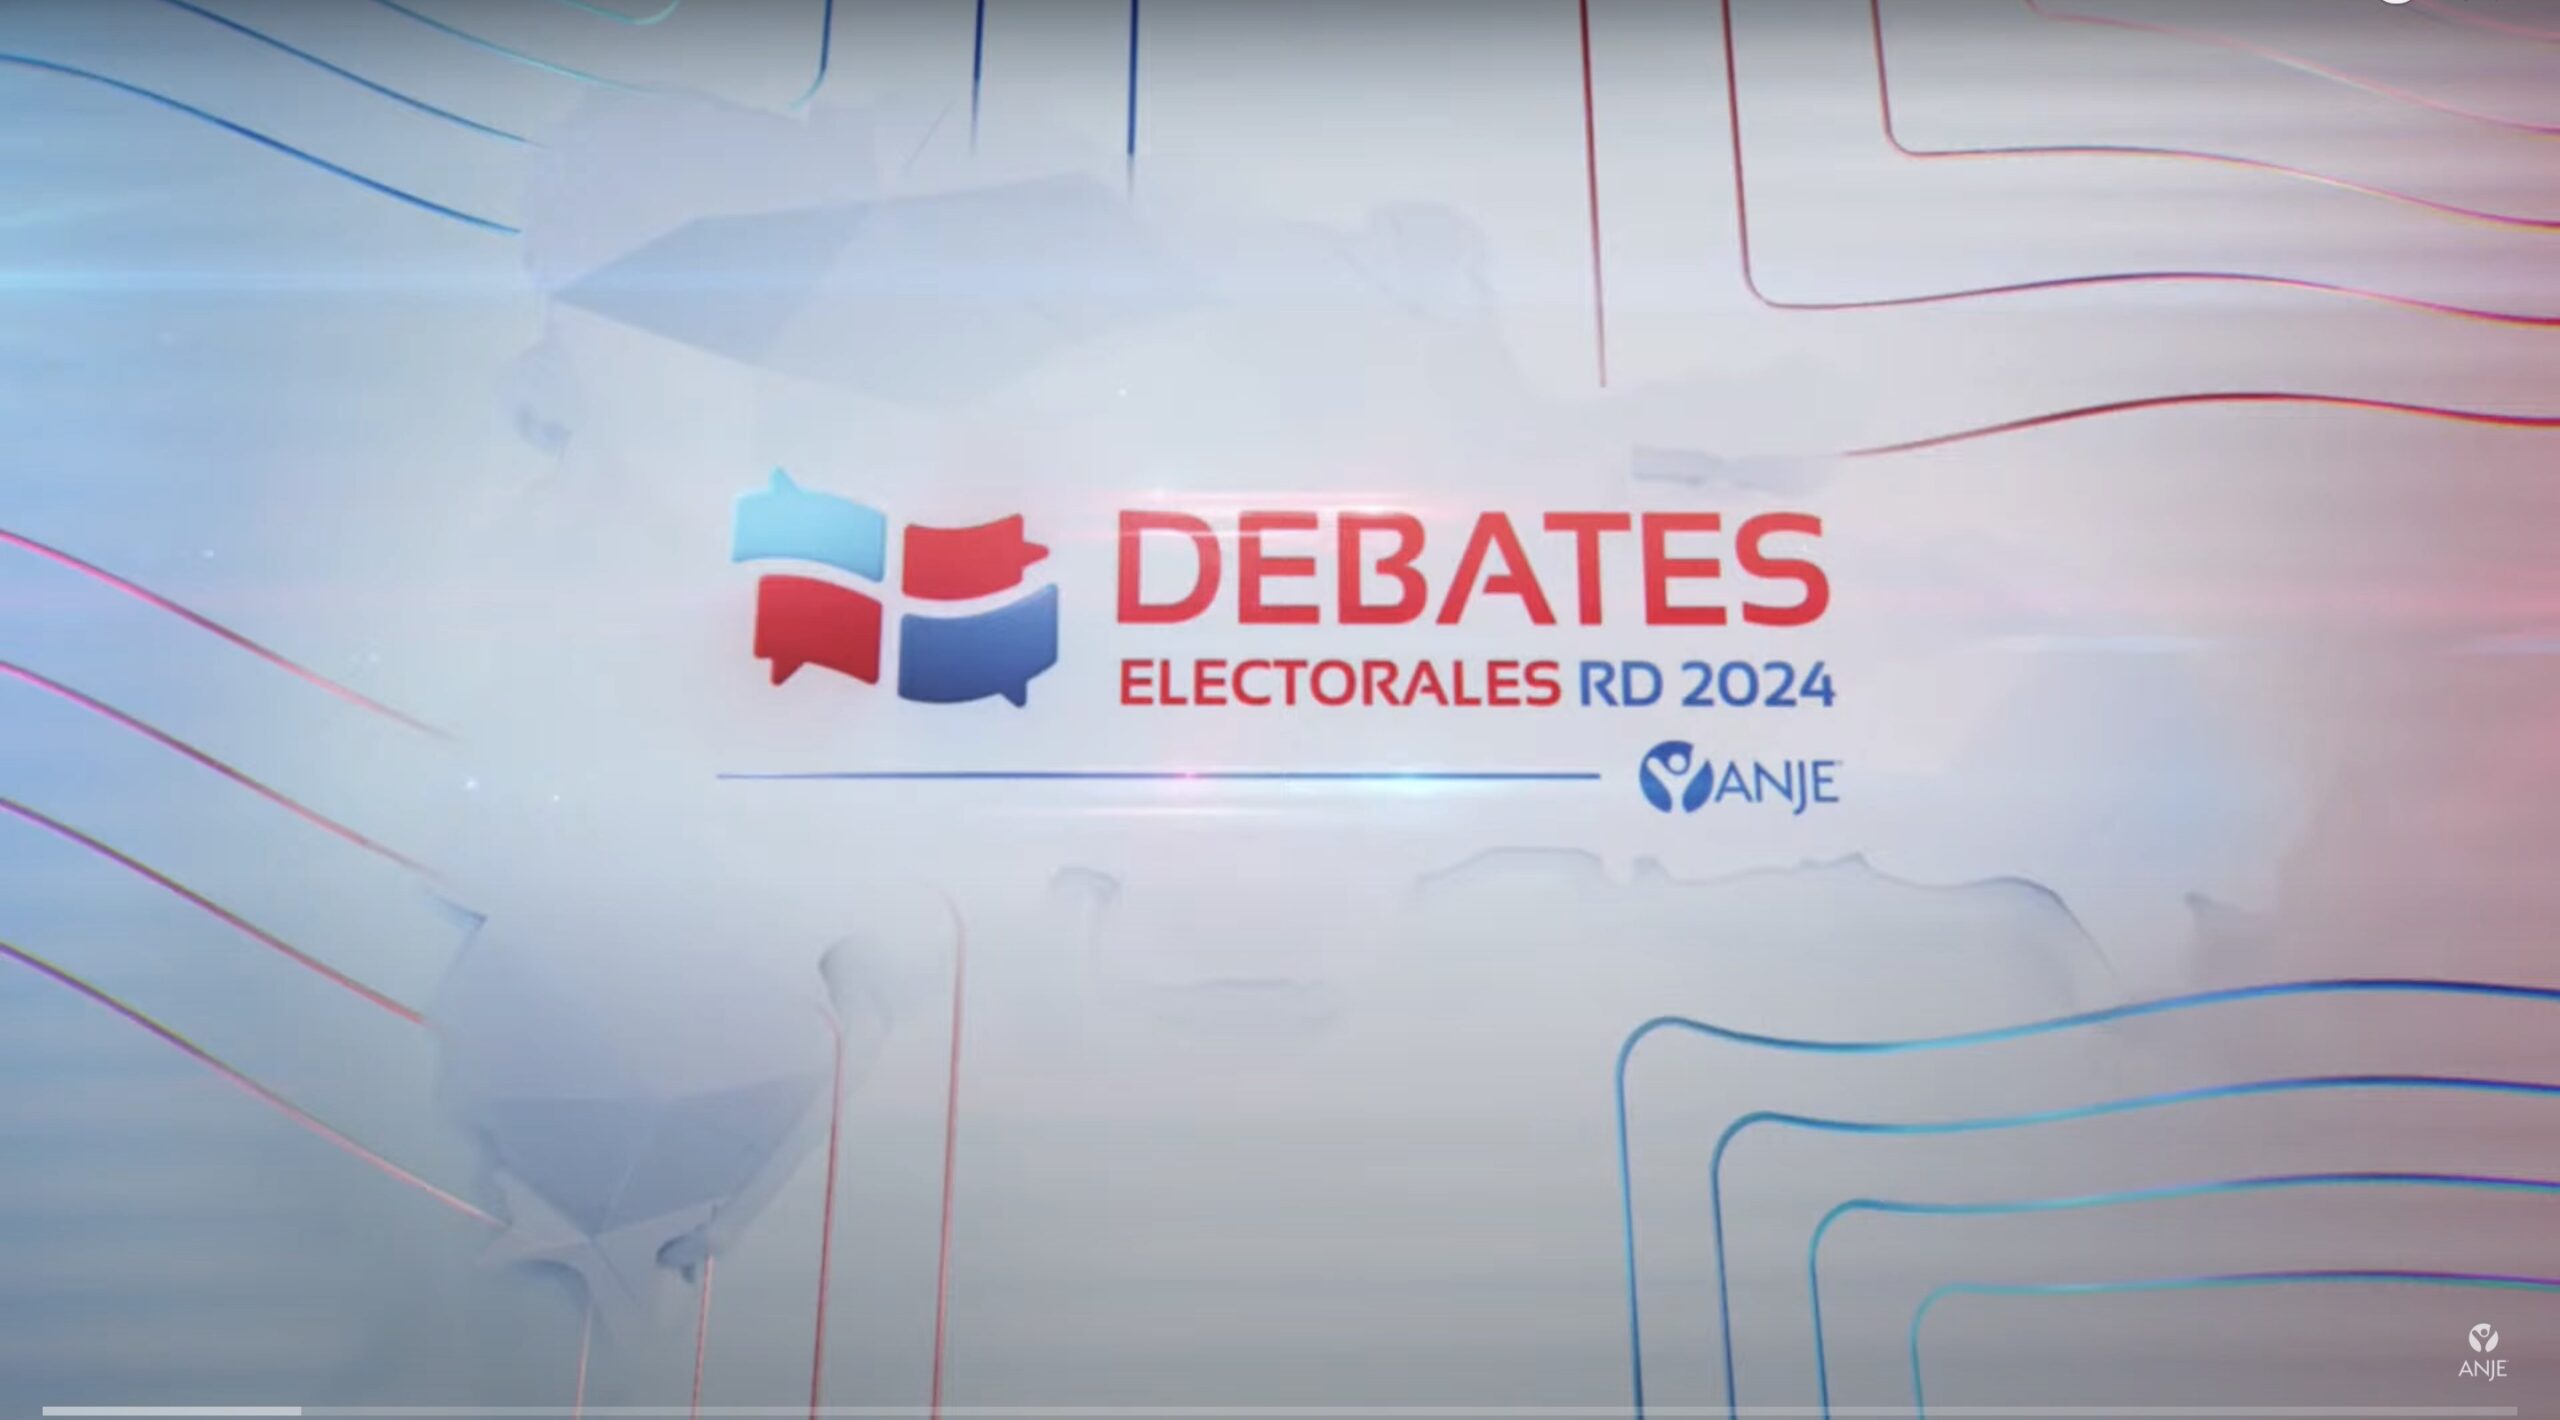 Detabe Senatorial | Santiago y Distrito Nacional